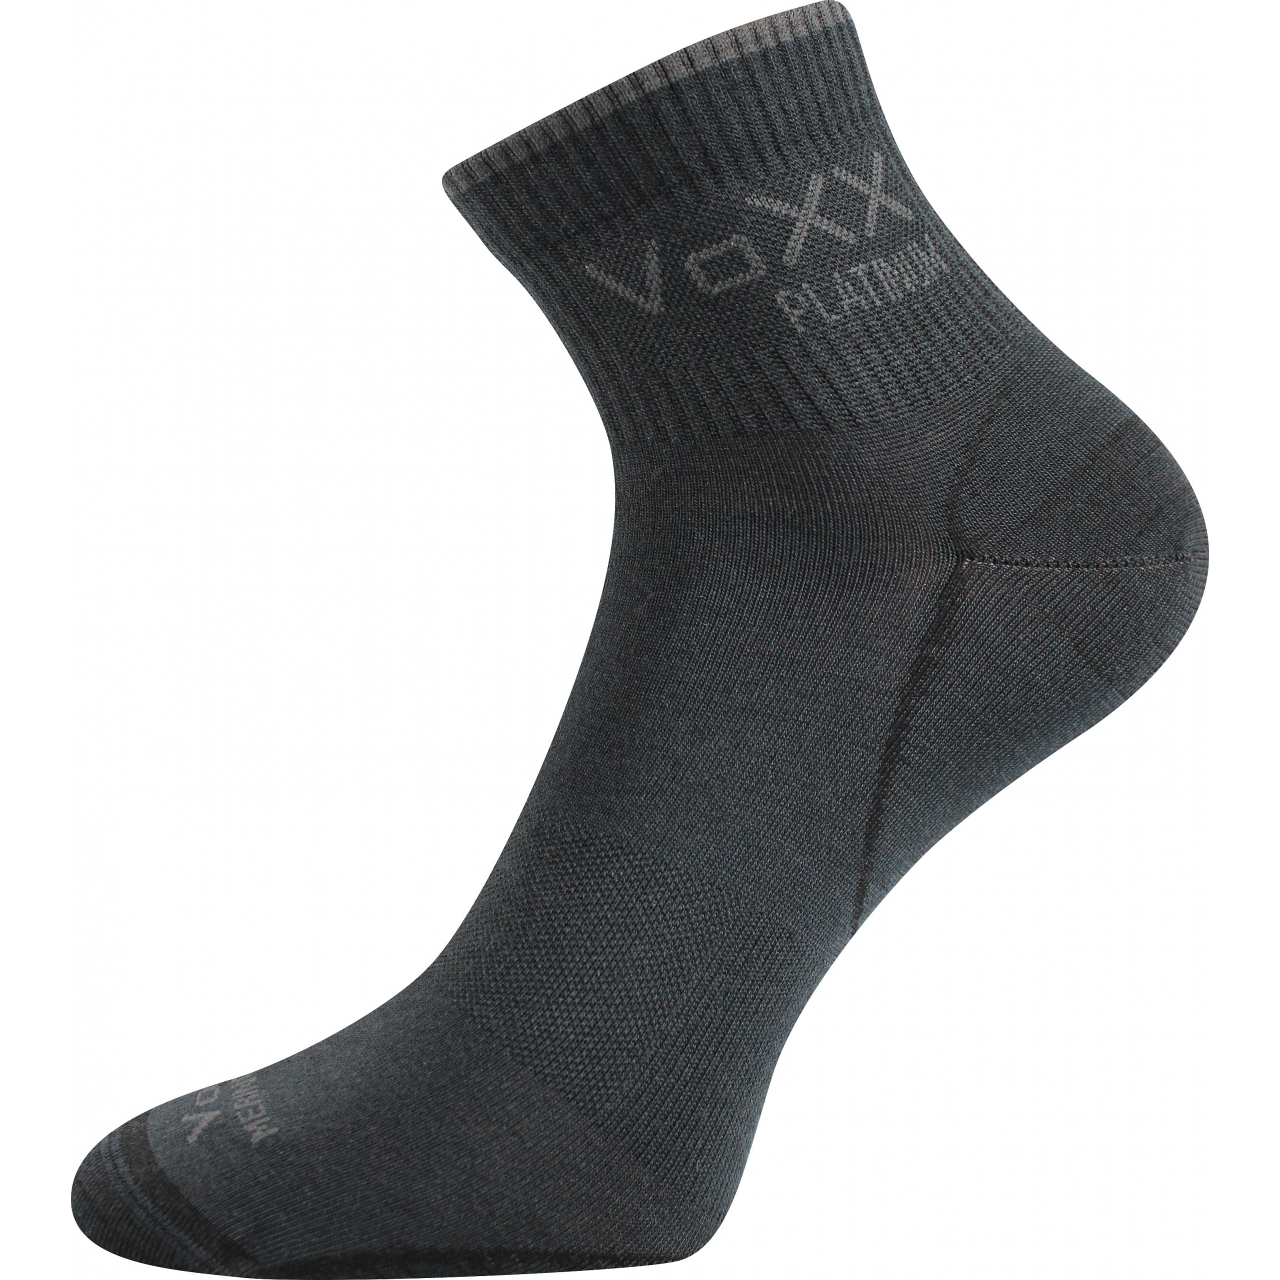 Ponožky klasické unisex Voxx Radik - tmavě šedé, 43-46